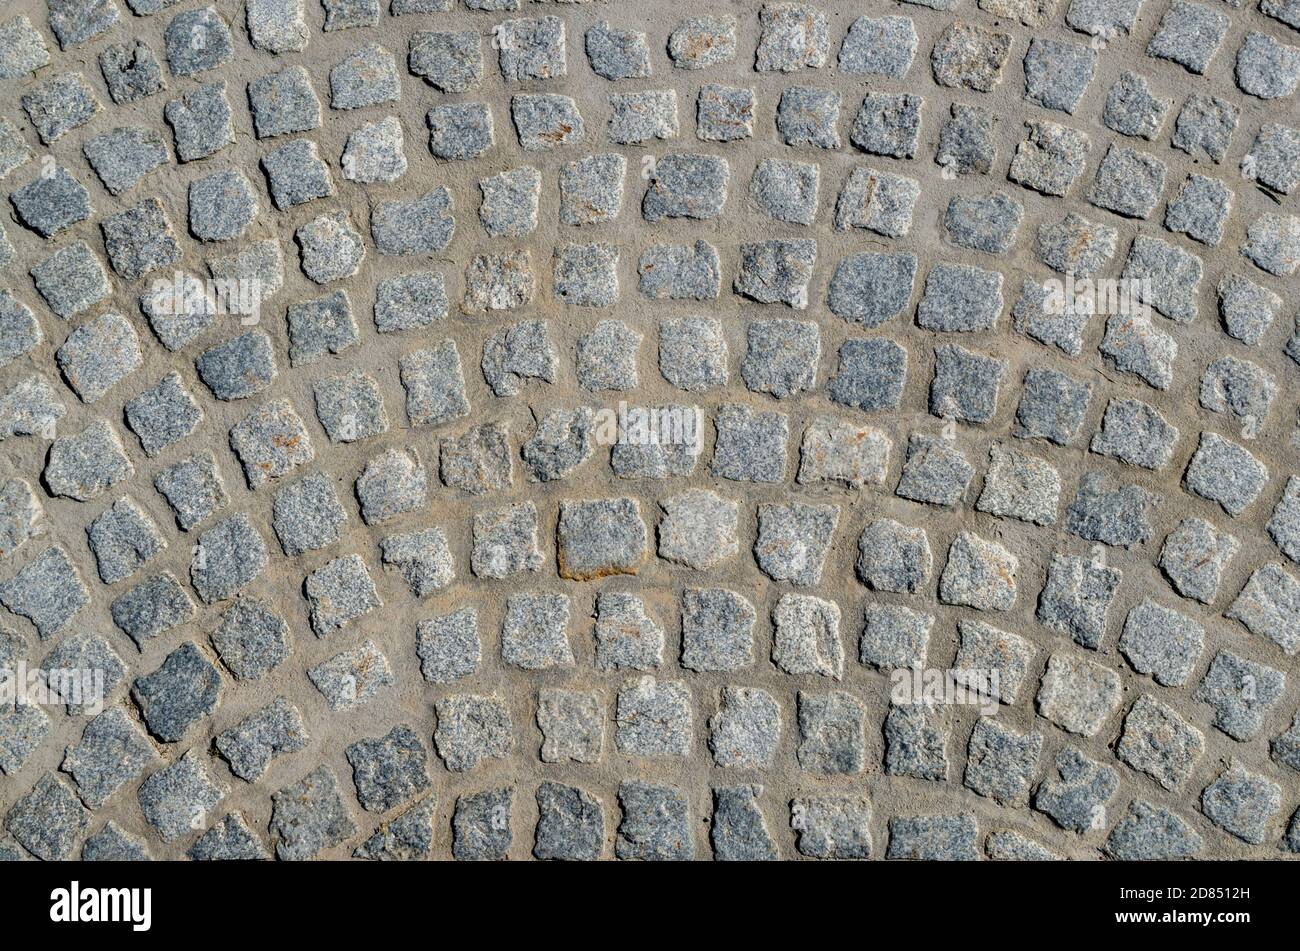 Un frammento di pavimentazione lastricata con blocchi di pietra grigiosa quadrata con bordi irregolari sotto forma di strisce arcuate semicircolari. Foto Stock